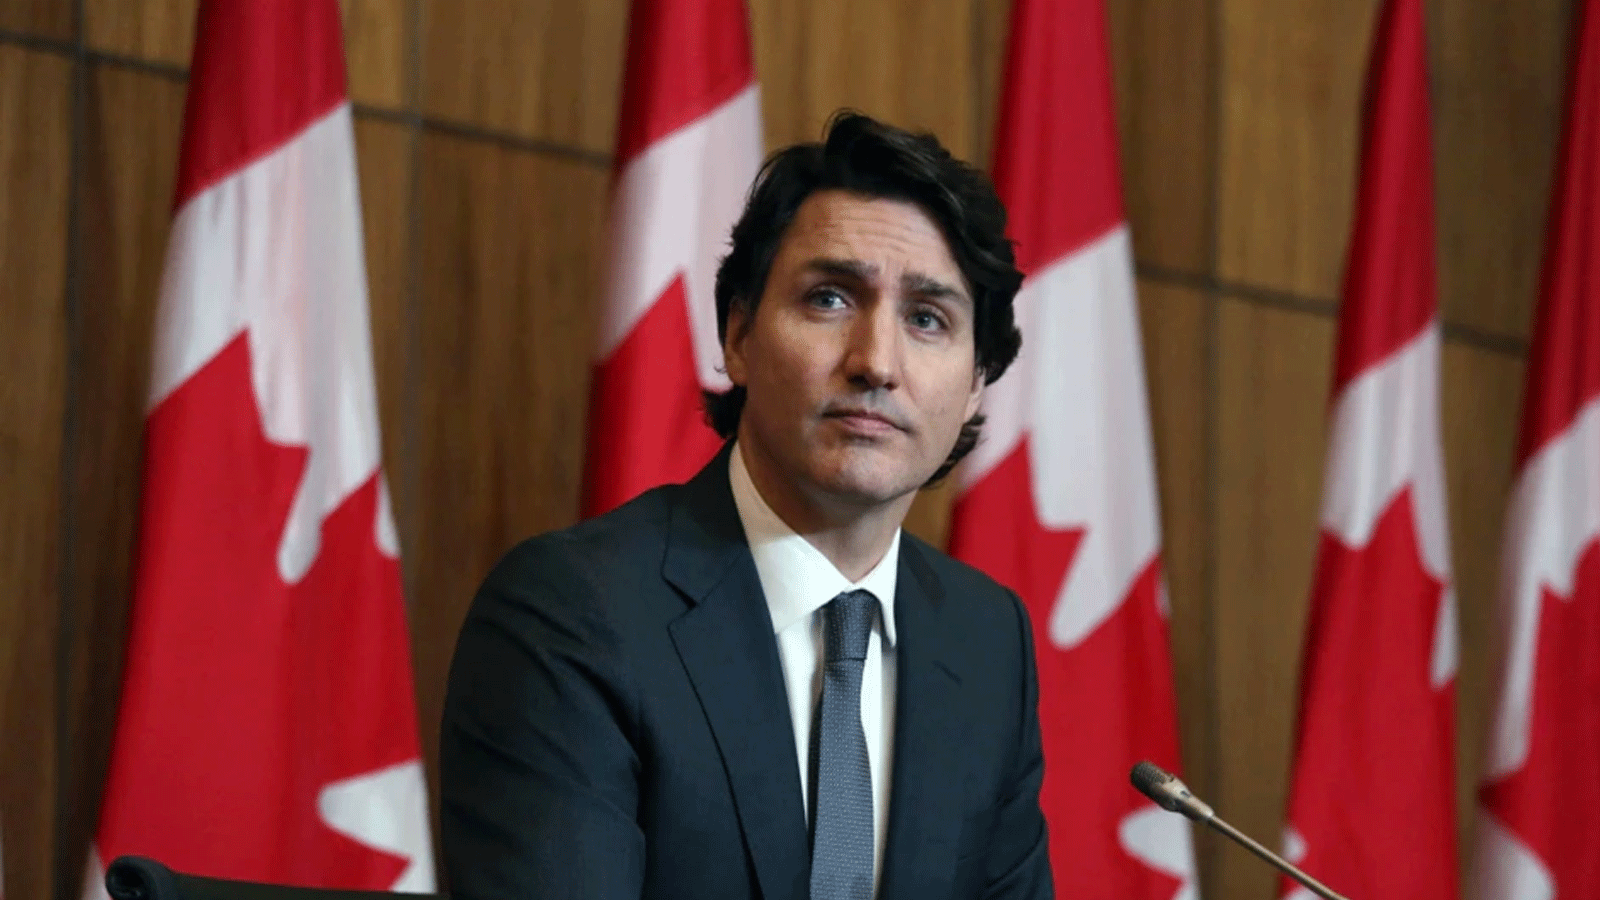 رئيس الوزراء الكندي جاستن ترودو يتحدث في مؤتمر صحفي في أوتاوا، كندا 